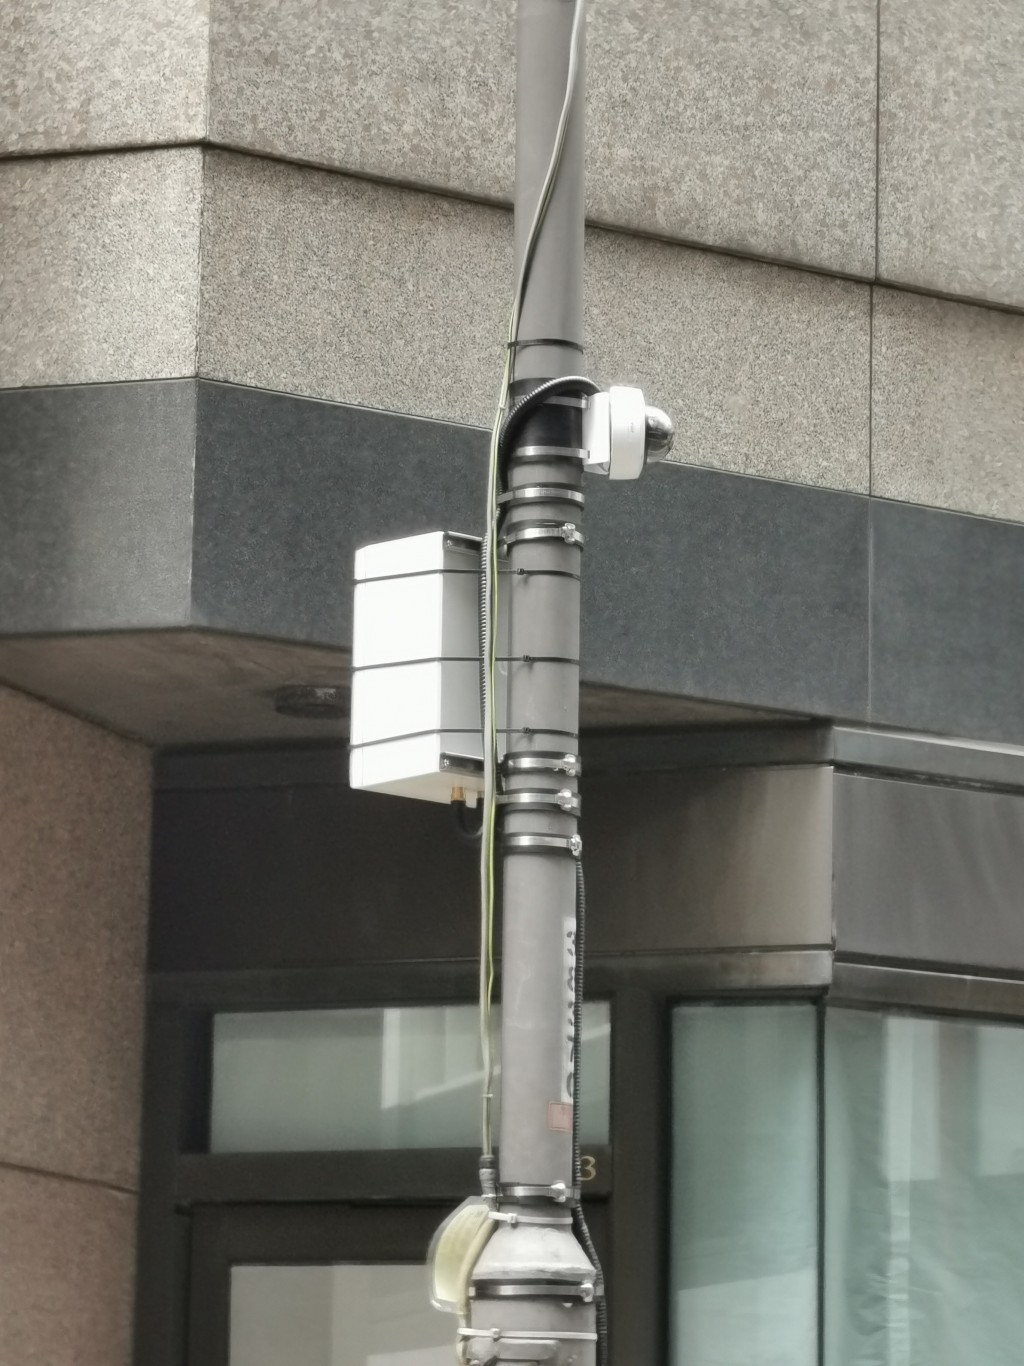 有關系統包括在相關路段合適燈柱上，安裝監察交通情況的閉路電視攝影機和相關的設備。